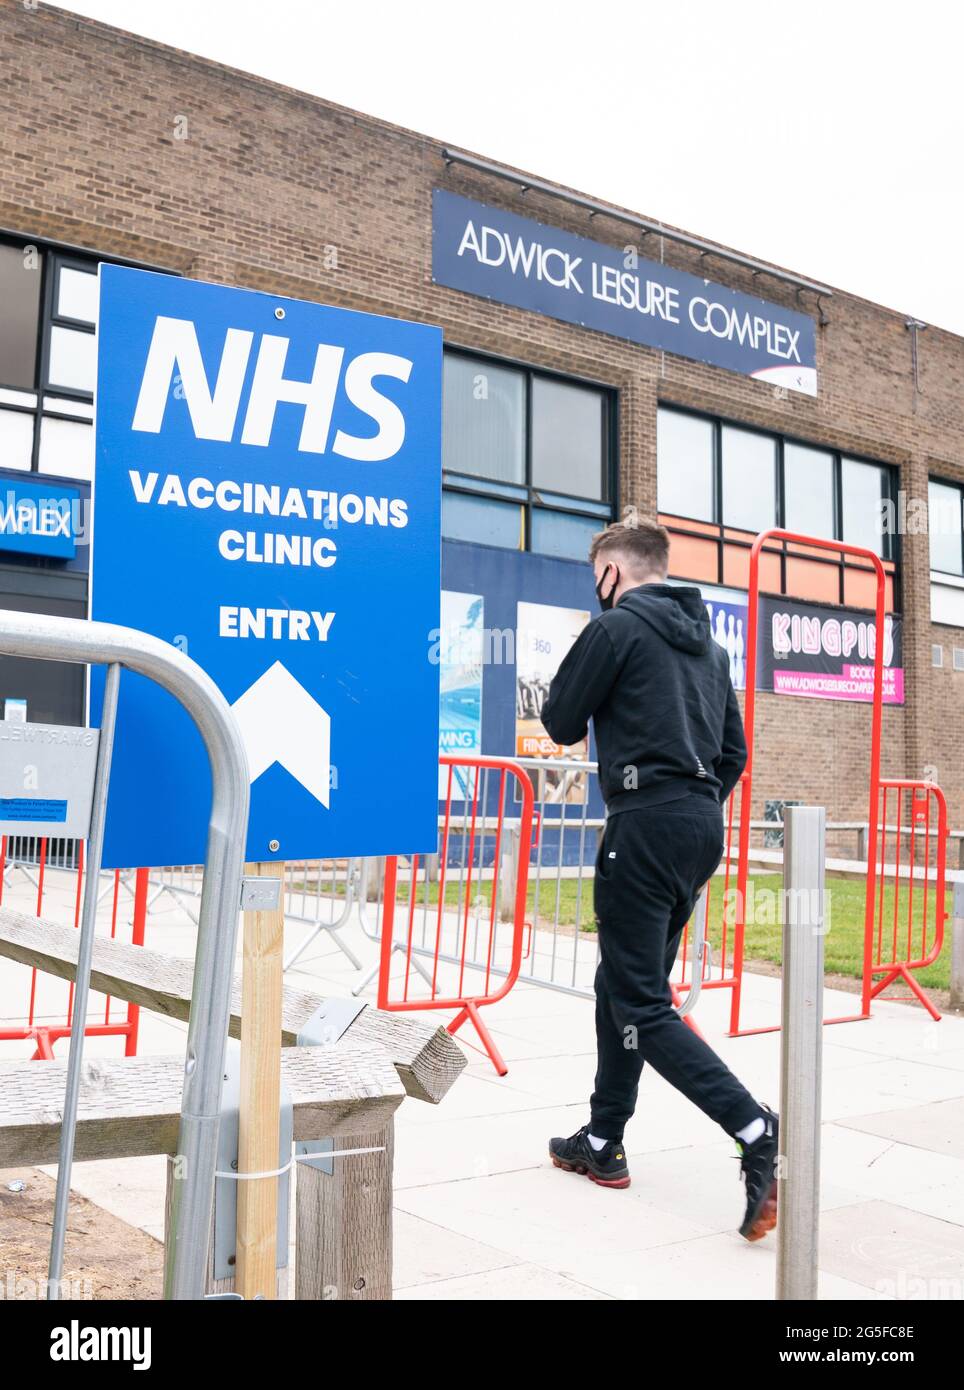 Una persona entra en un centro masivo de vacunación contra el coronavirus en el Adwick Leisure Centre, en Doncaster, mientras continúa en Inglaterra la campaña de vacunación contra el NHS «Grab a jab». Fecha de la foto: Domingo 27 de junio de 2021. Foto de stock